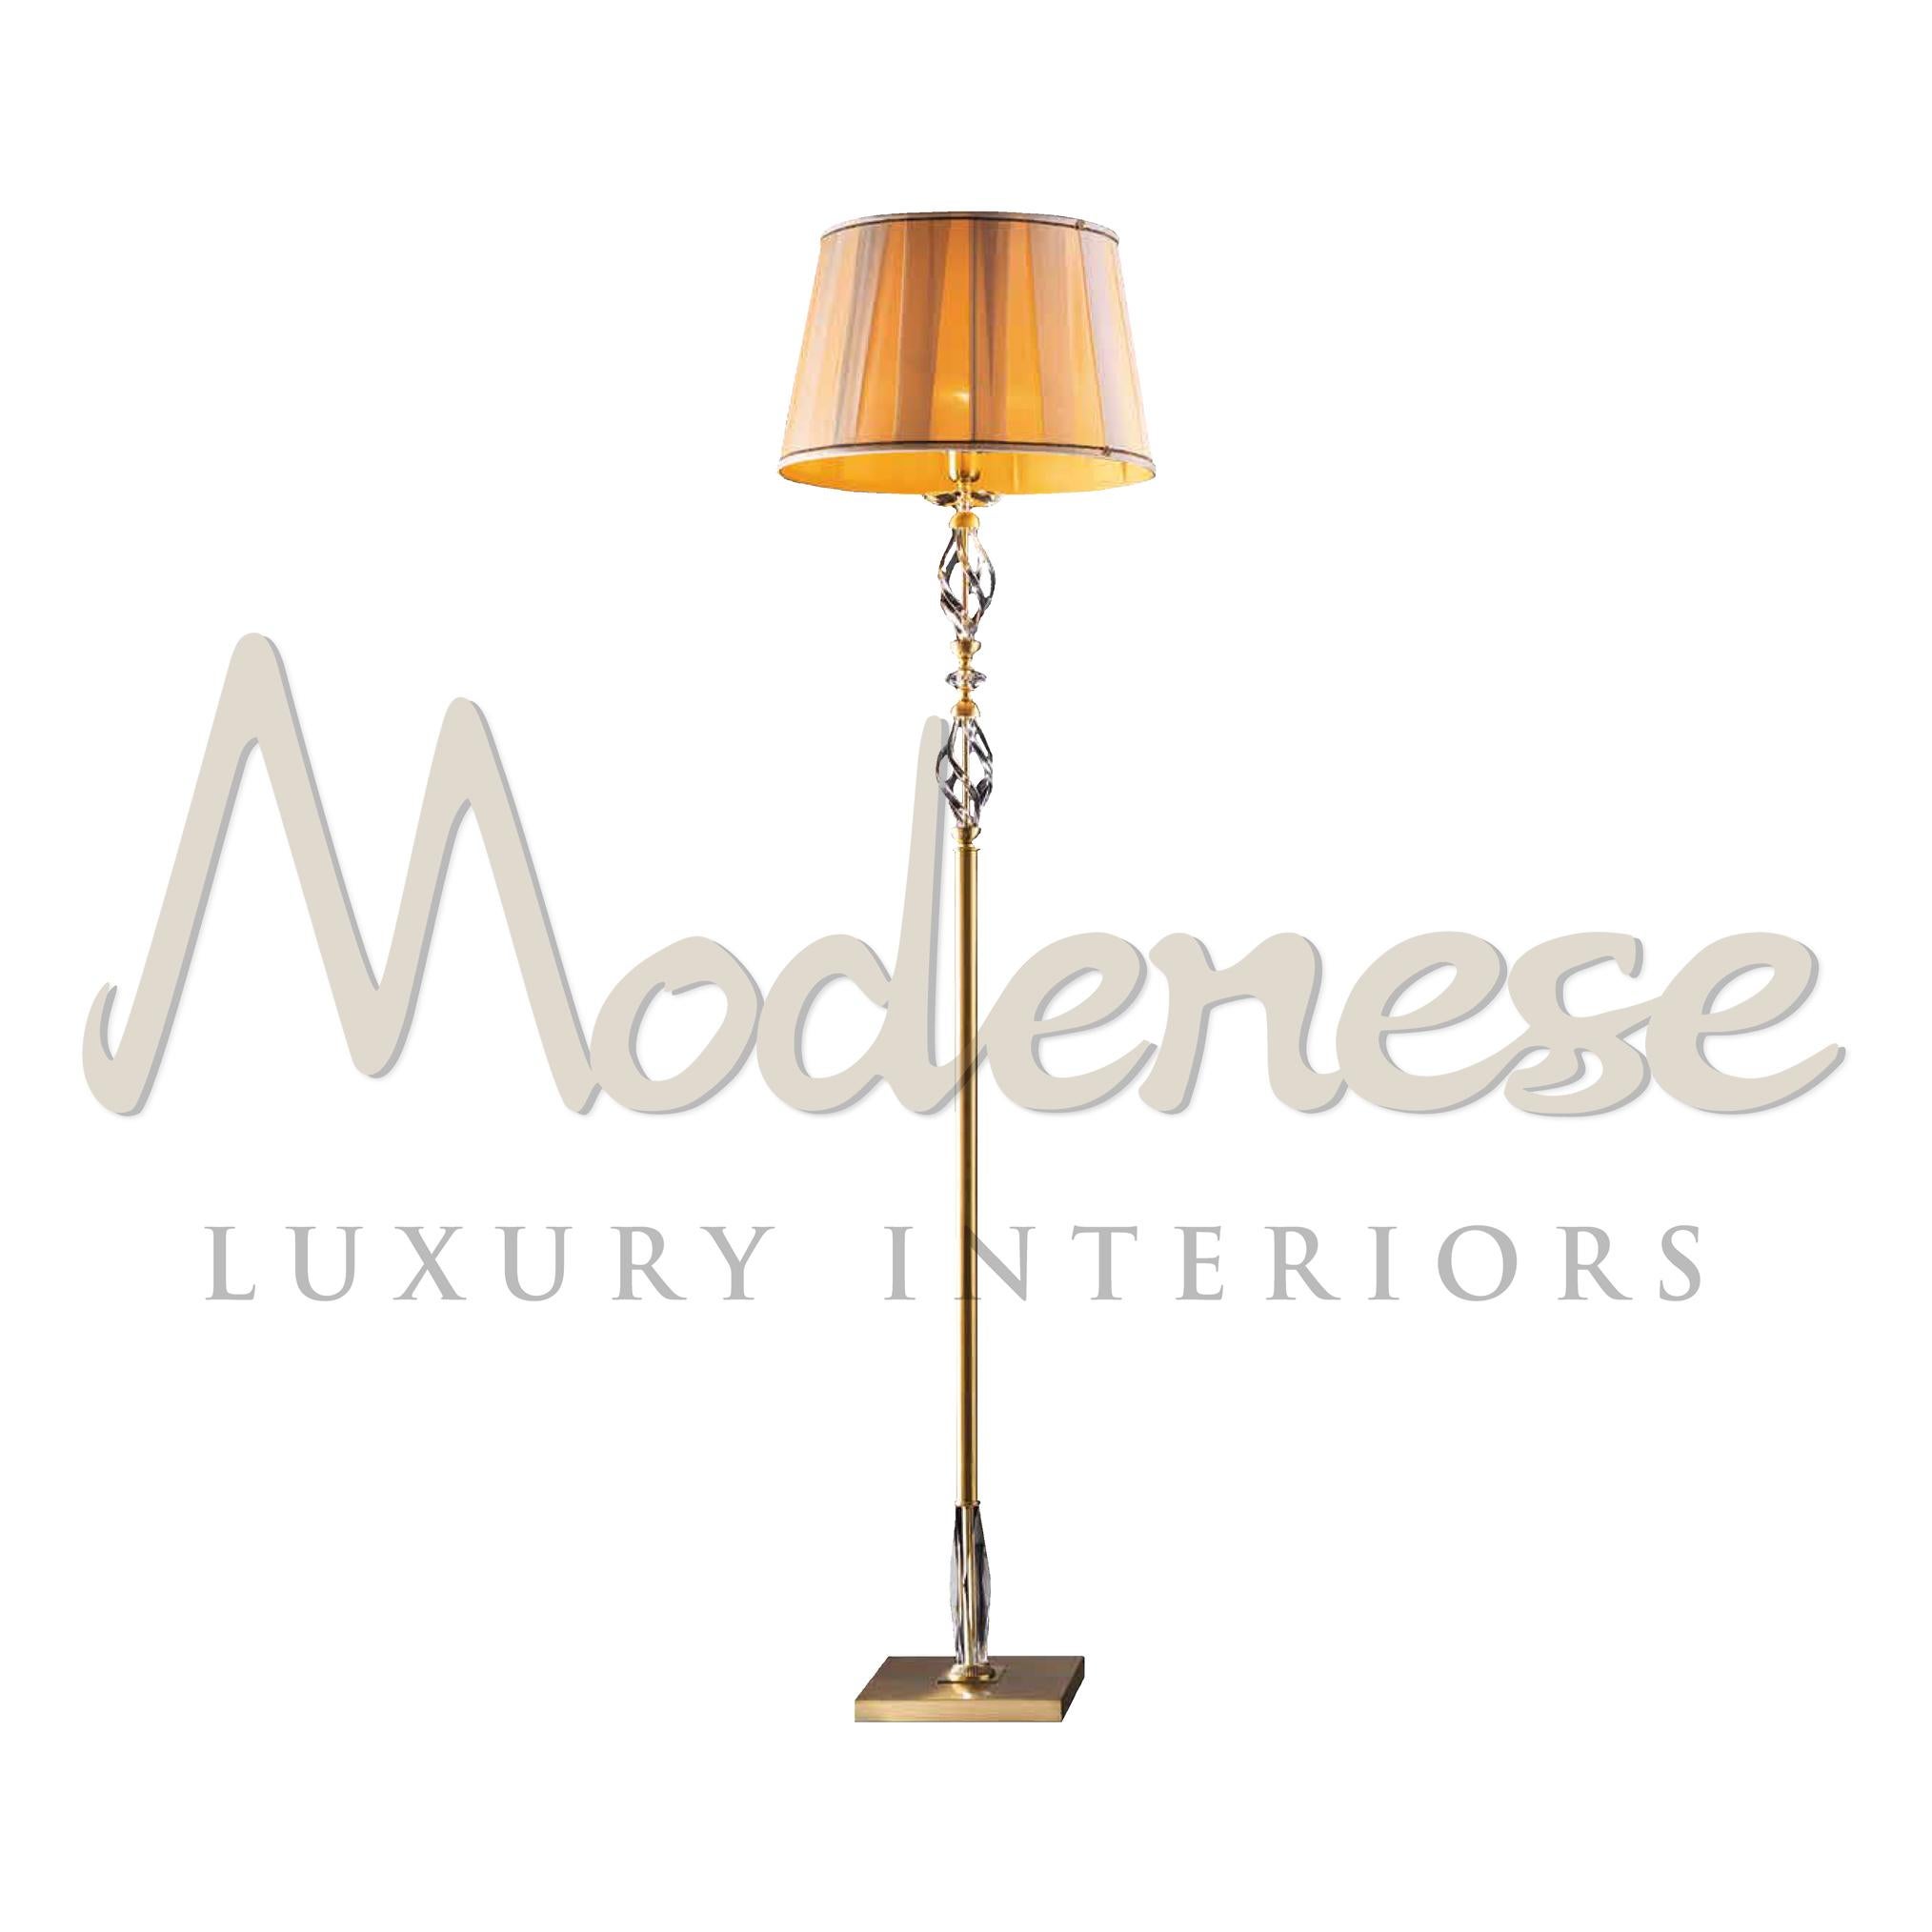 Die luxuriösen Modenese Gastone Stehlampen für Innenräume basieren auf dem Stil der alten Inspirationen des Rokoko und des Barocks für reiche Salons. Die Kombination aus satiniertem Gold, transparentem Kristall und Lampenschirm macht dieses Modell